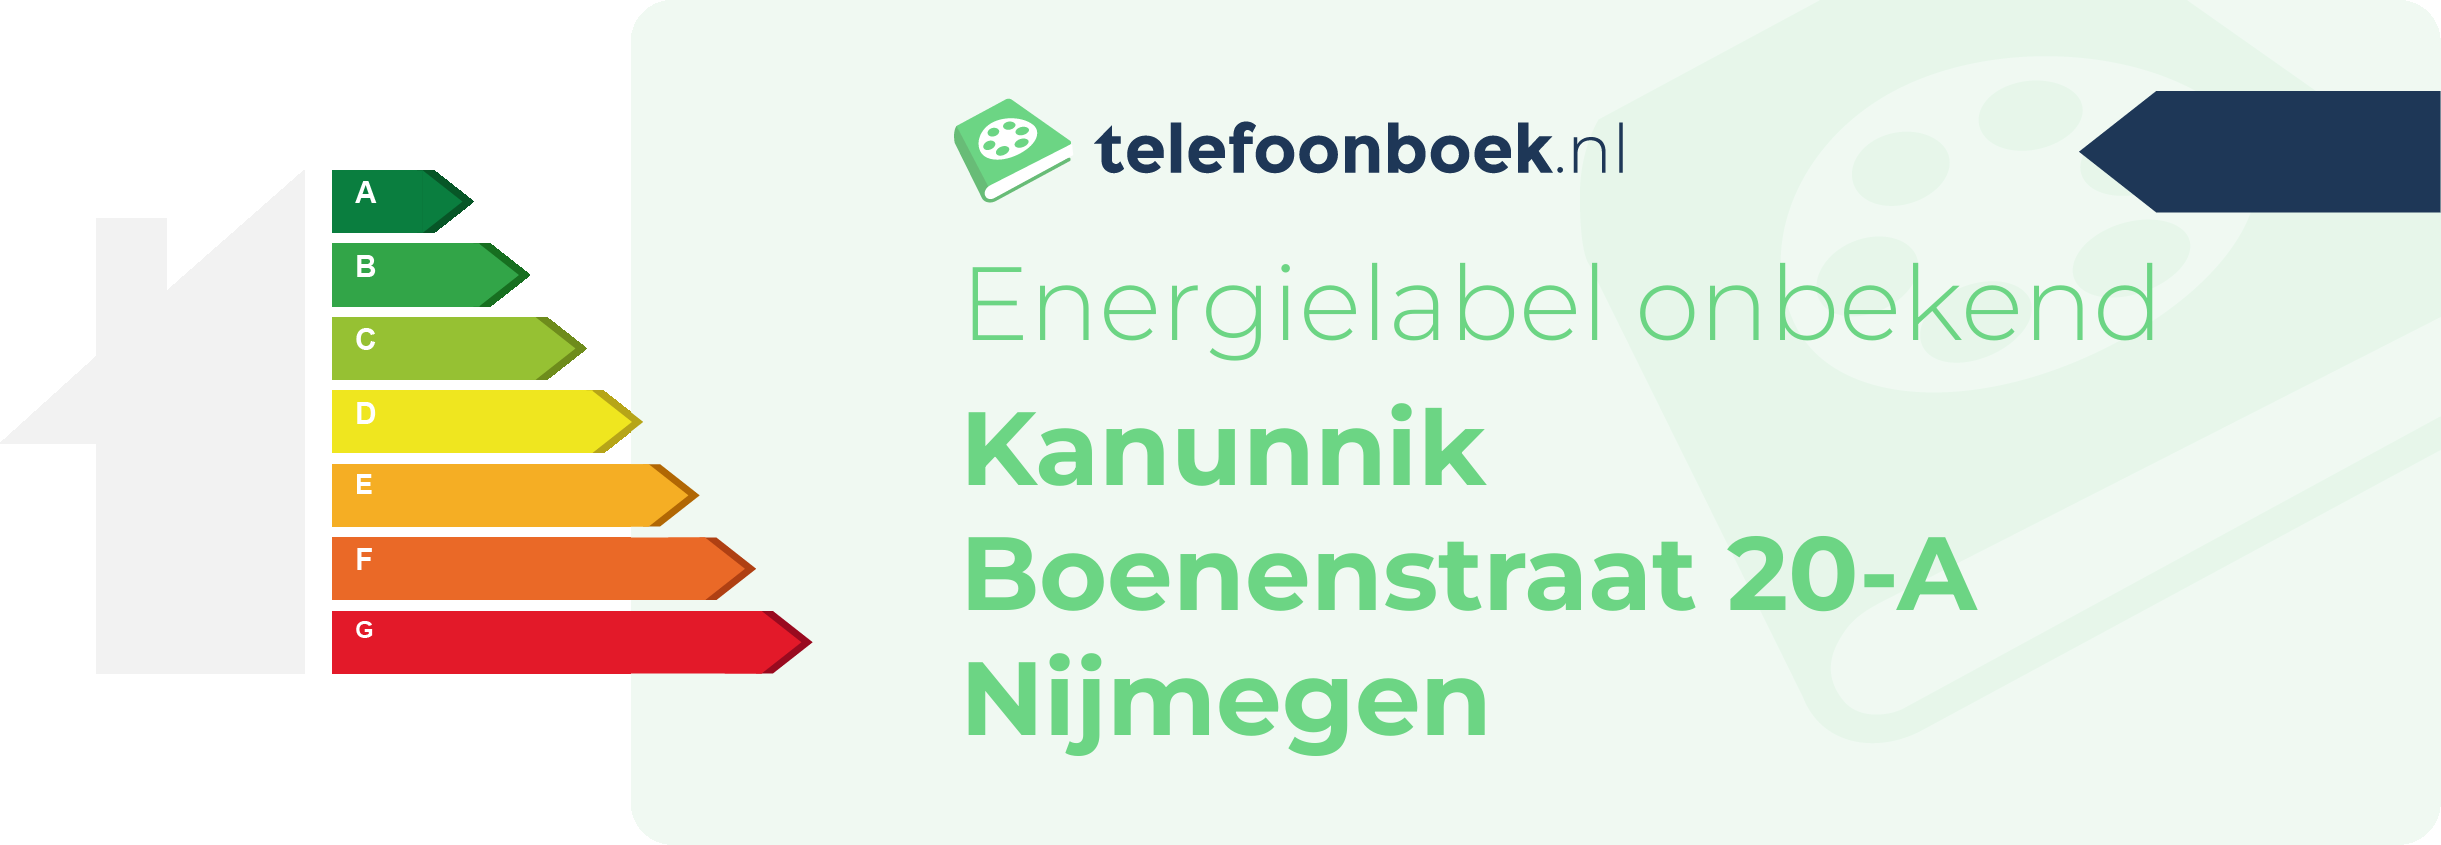 Energielabel Kanunnik Boenenstraat 20-A Nijmegen